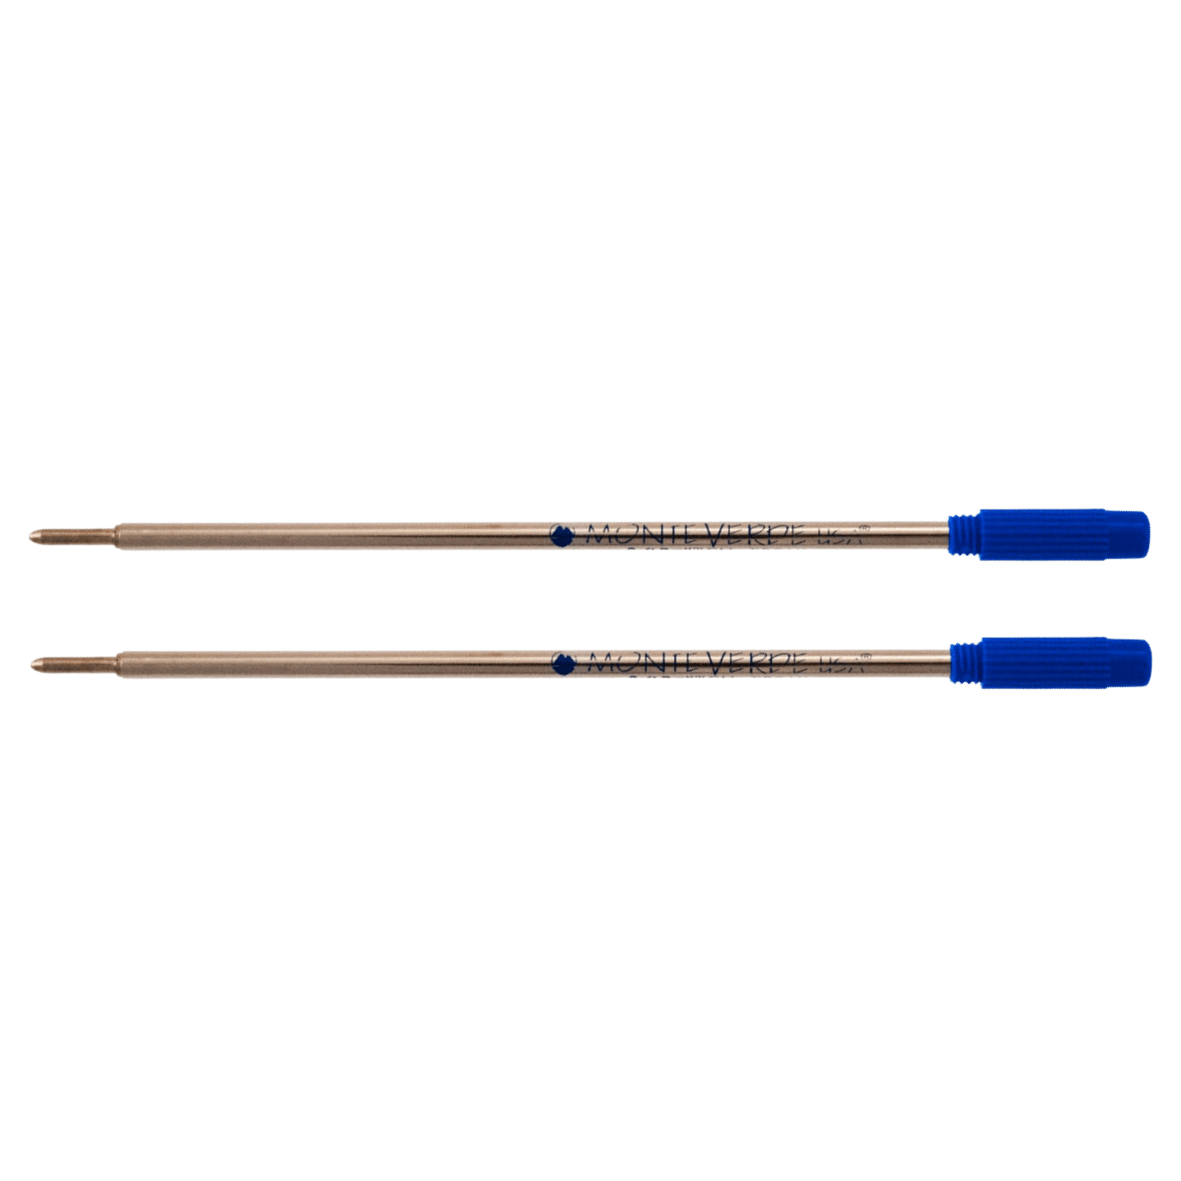 Monteverde penvulling set van 2 blauw - geschikt voor Cross en Filofax pennen